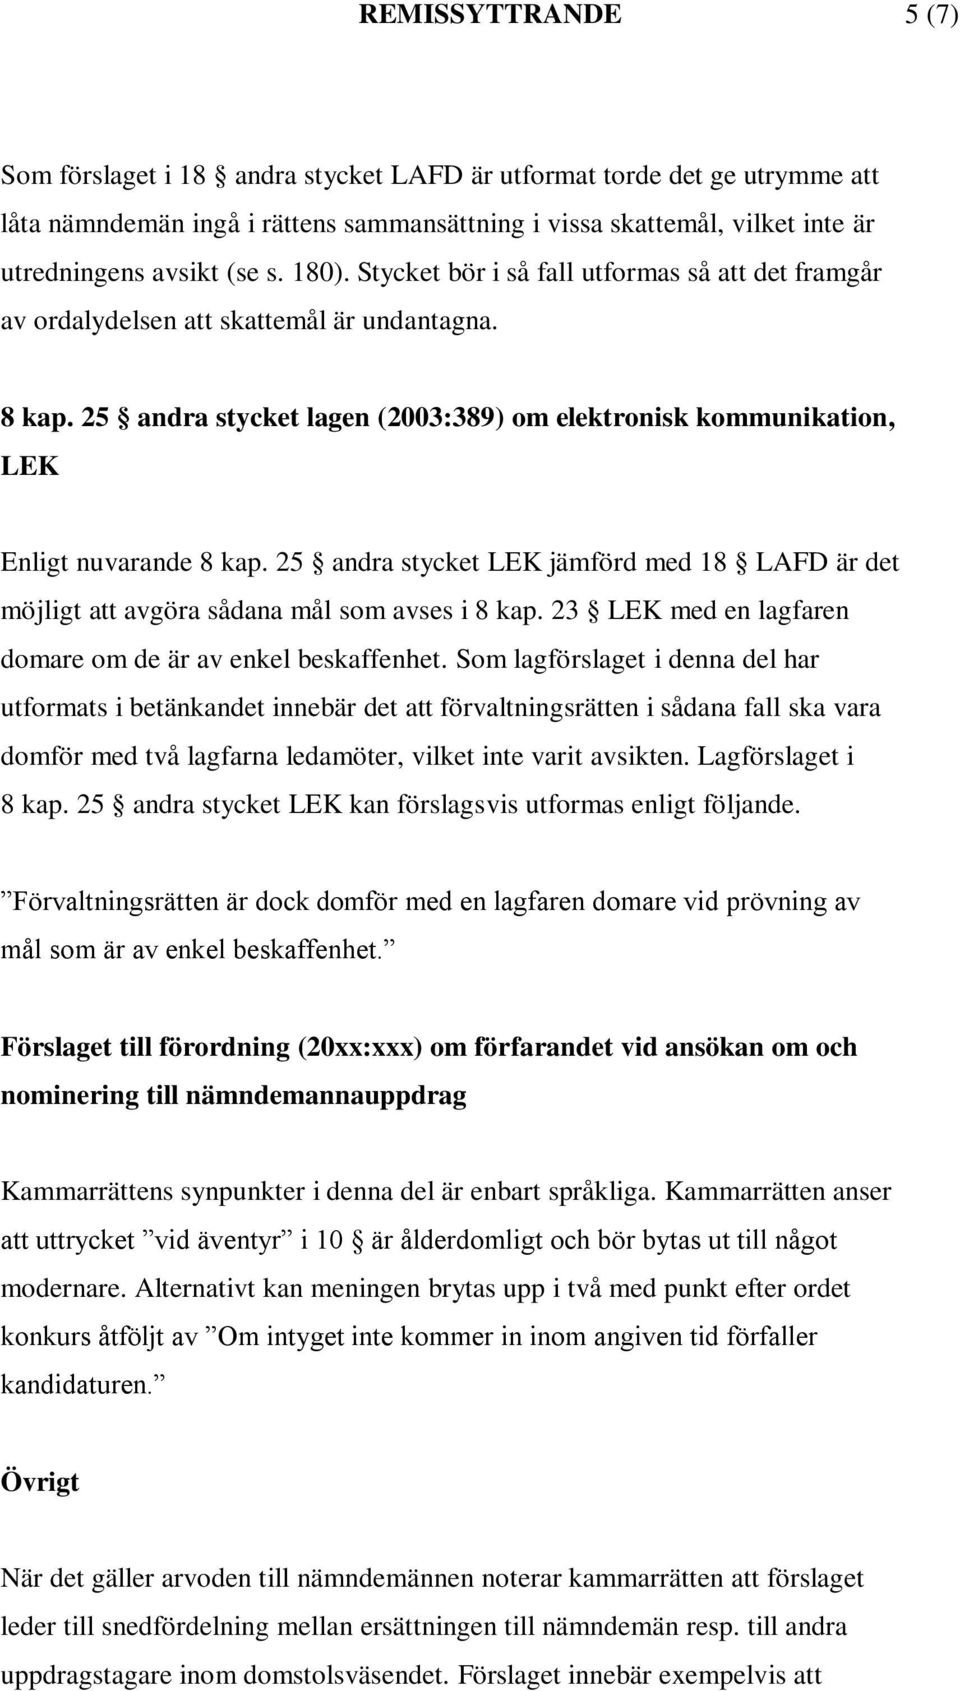 25 andra stycket lagen (2003:389) om elektronisk kommunikation, LEK Enligt nuvarande 8 kap. 25 andra stycket LEK jämförd med 18 LAFD är det möjligt att avgöra sådana mål som avses i 8 kap.